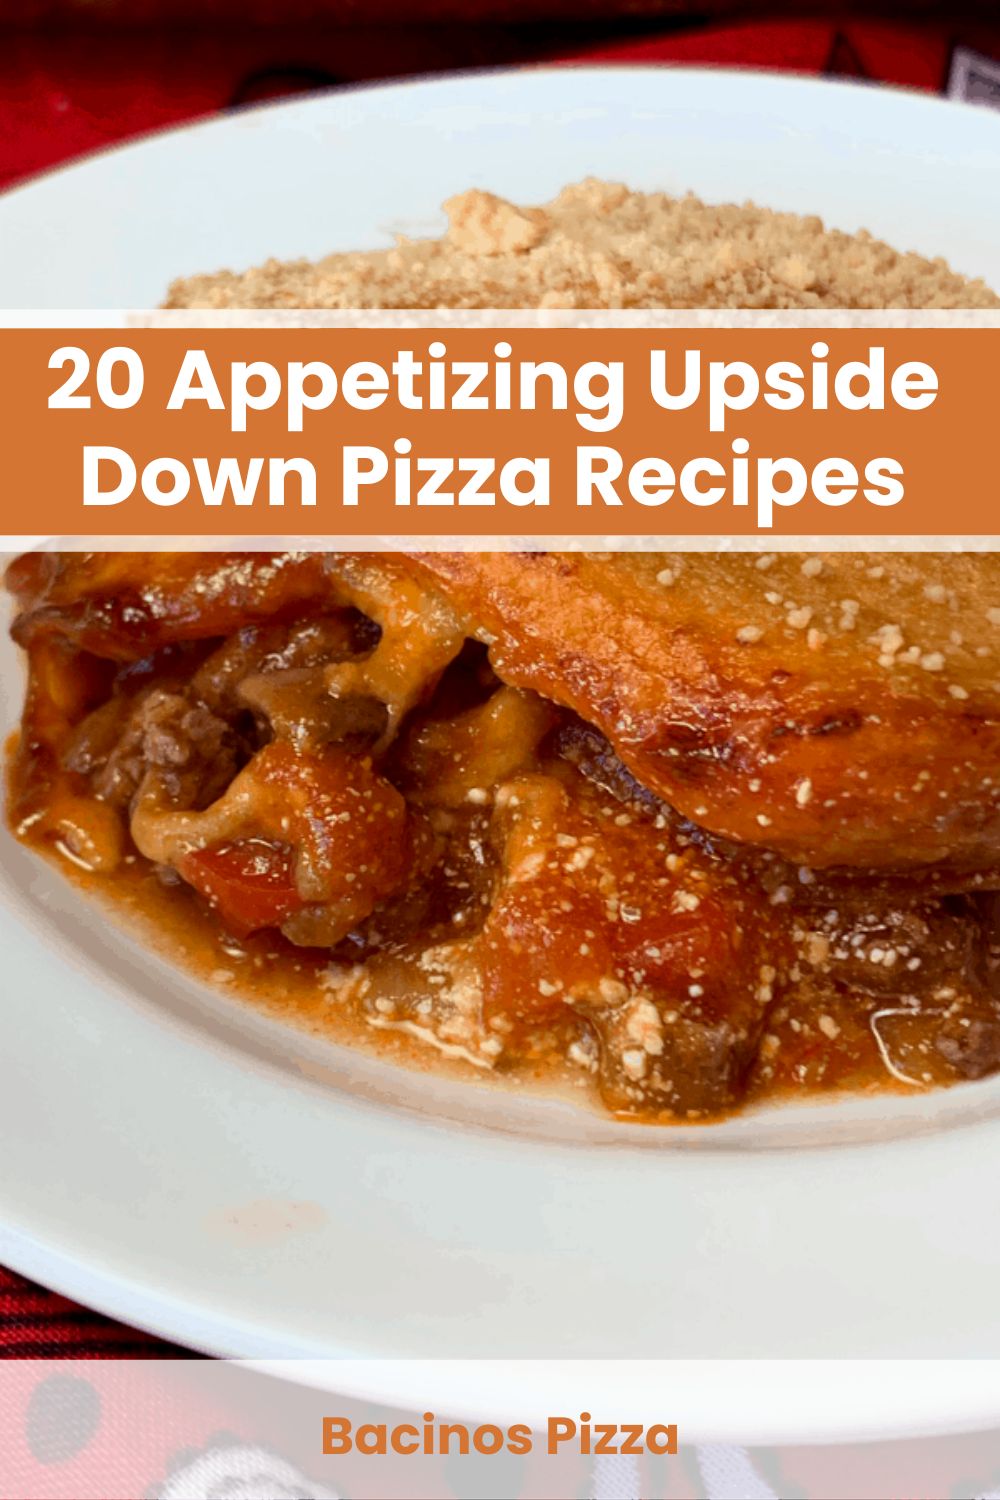 Upside Down Pizza recipe